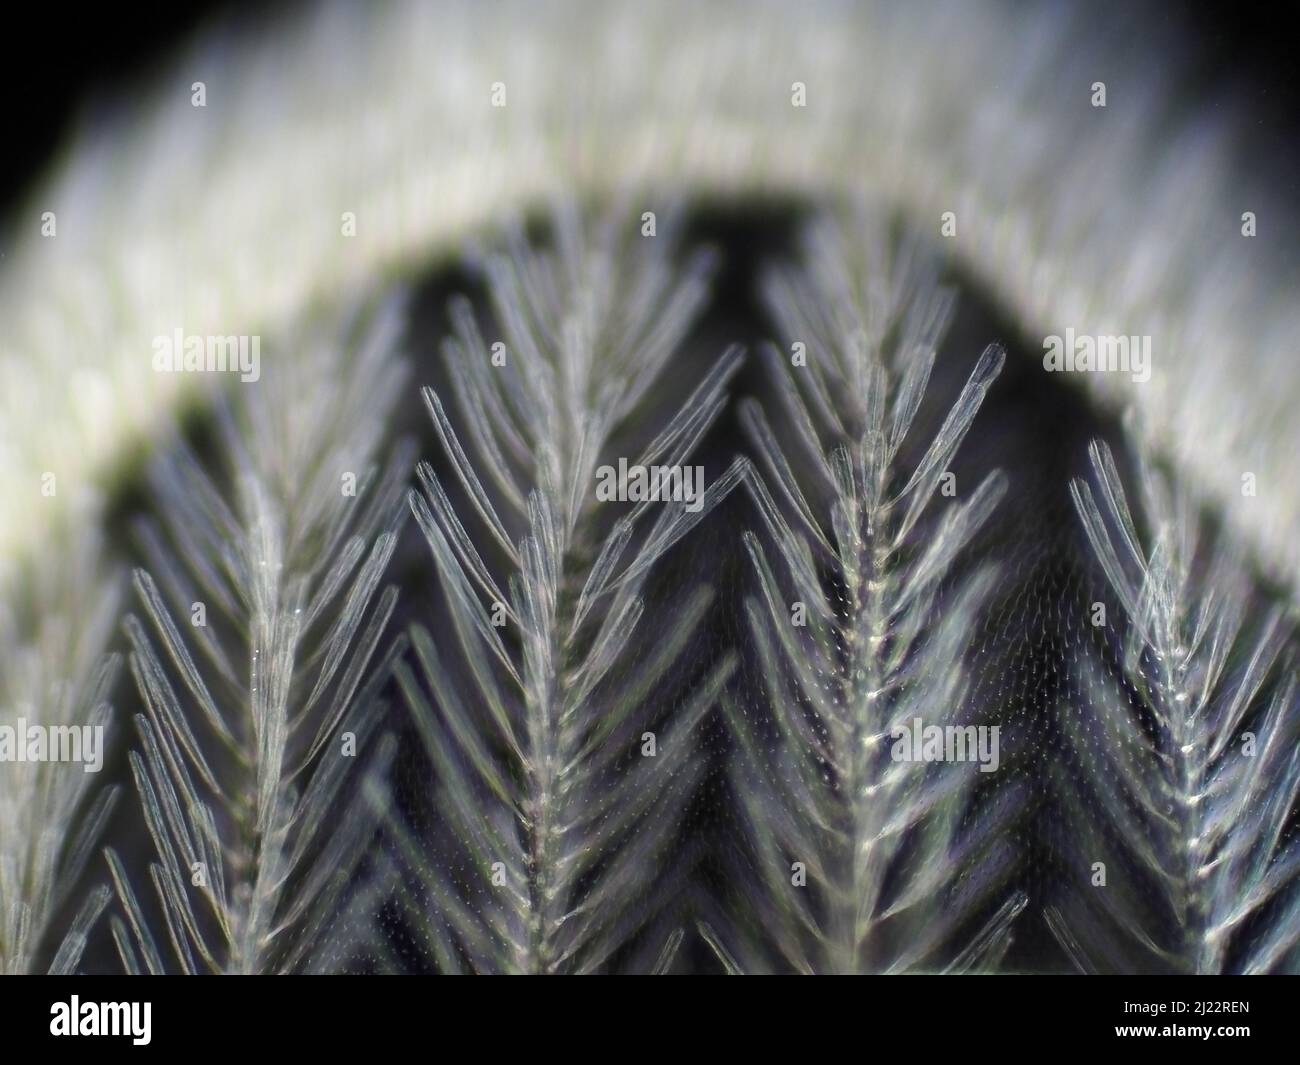 Micrographe à champ sombre d'une aile de moustique, le champ de vision horizontal est d'environ 0,61 mm Banque D'Images